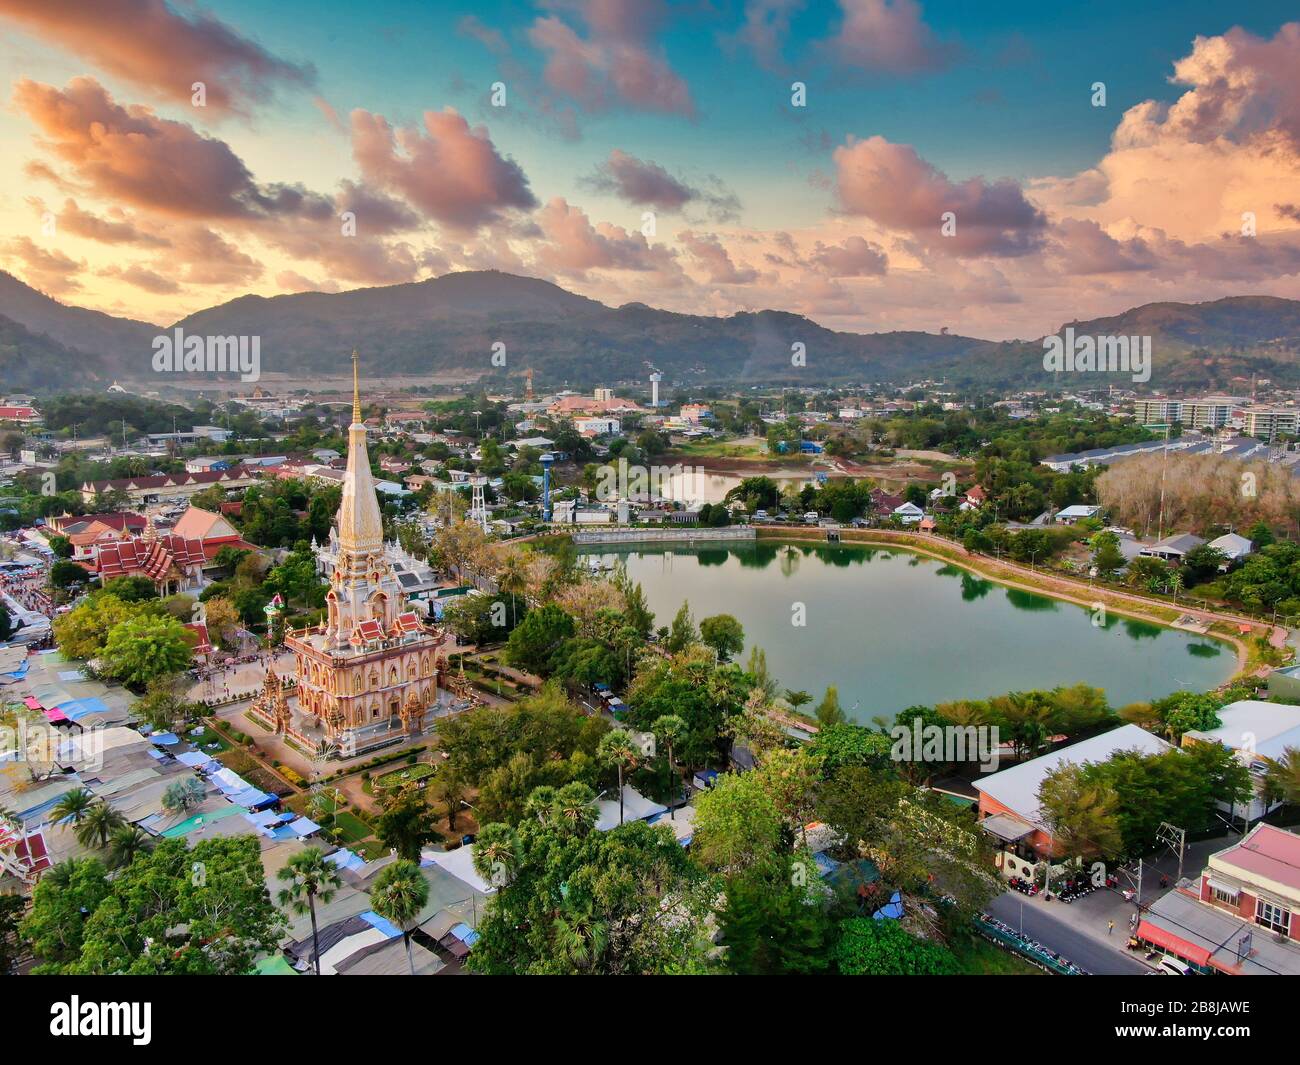 Luftansicht Mit Drone. Wat Chalong oder Chalong Tempel in Pagode Phuket Thailand. Öffentlicher Platz. Dronenfoto. Stockfoto